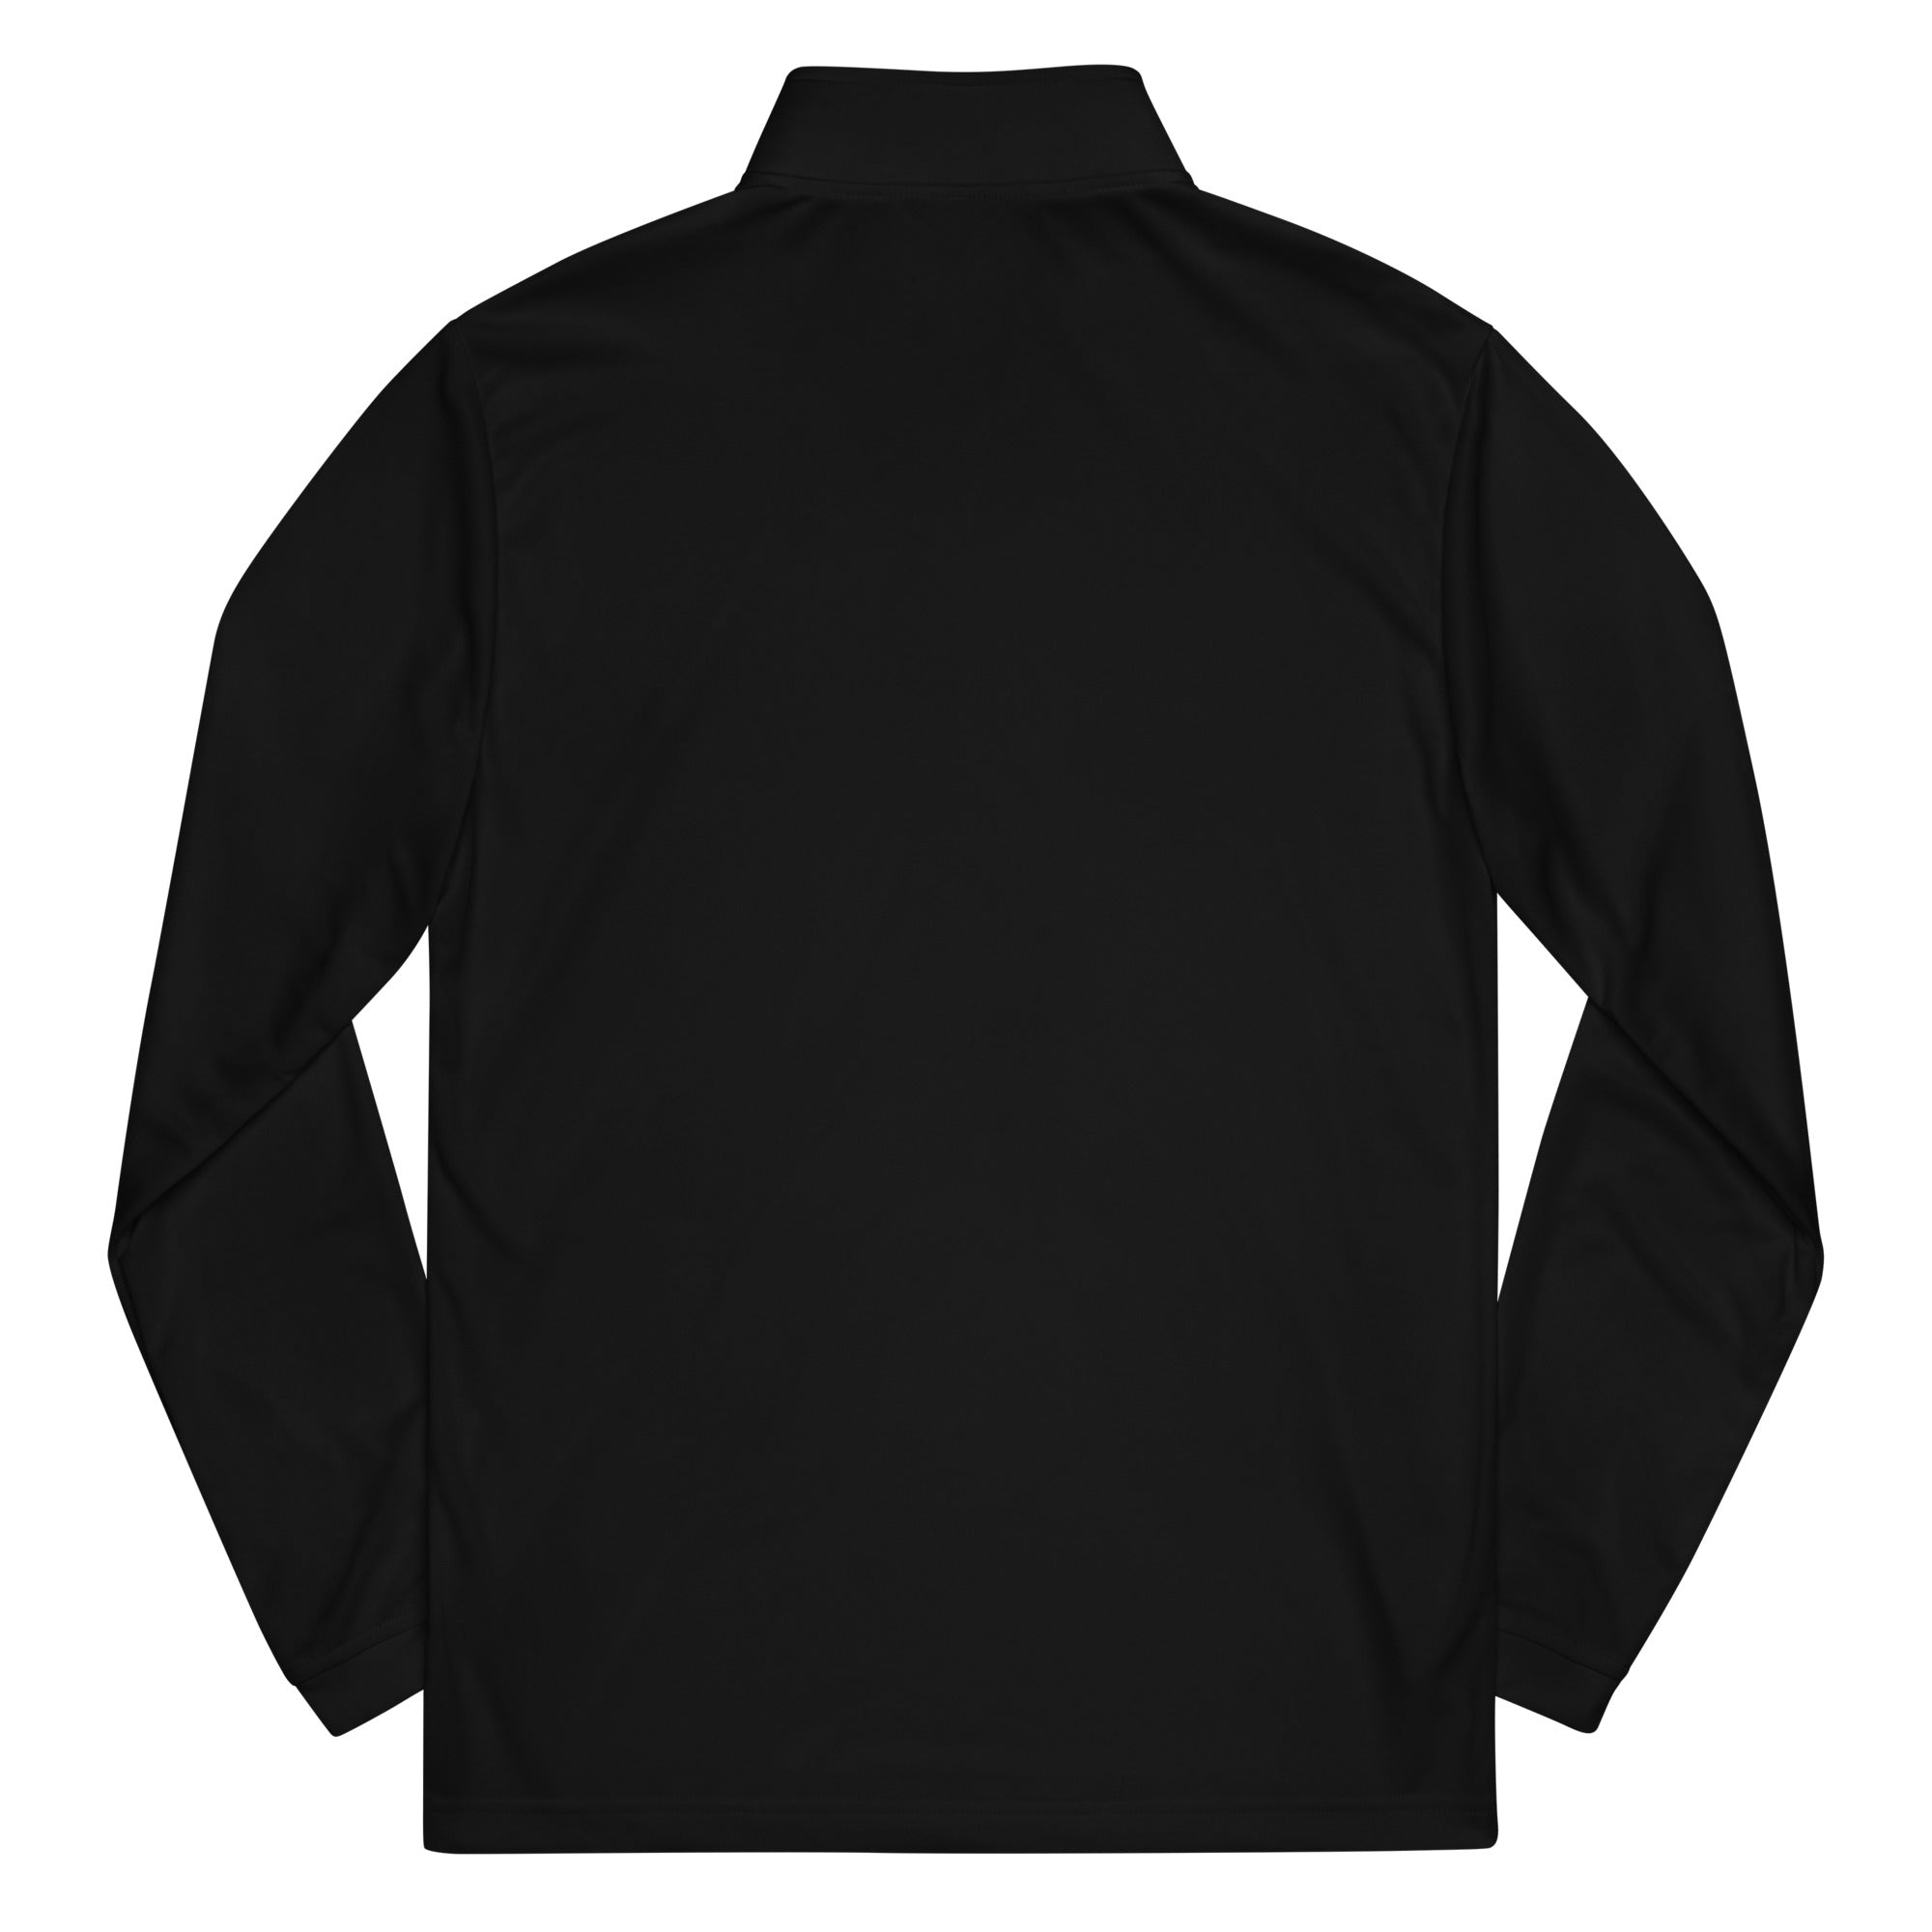 UI Quarter zip pullover